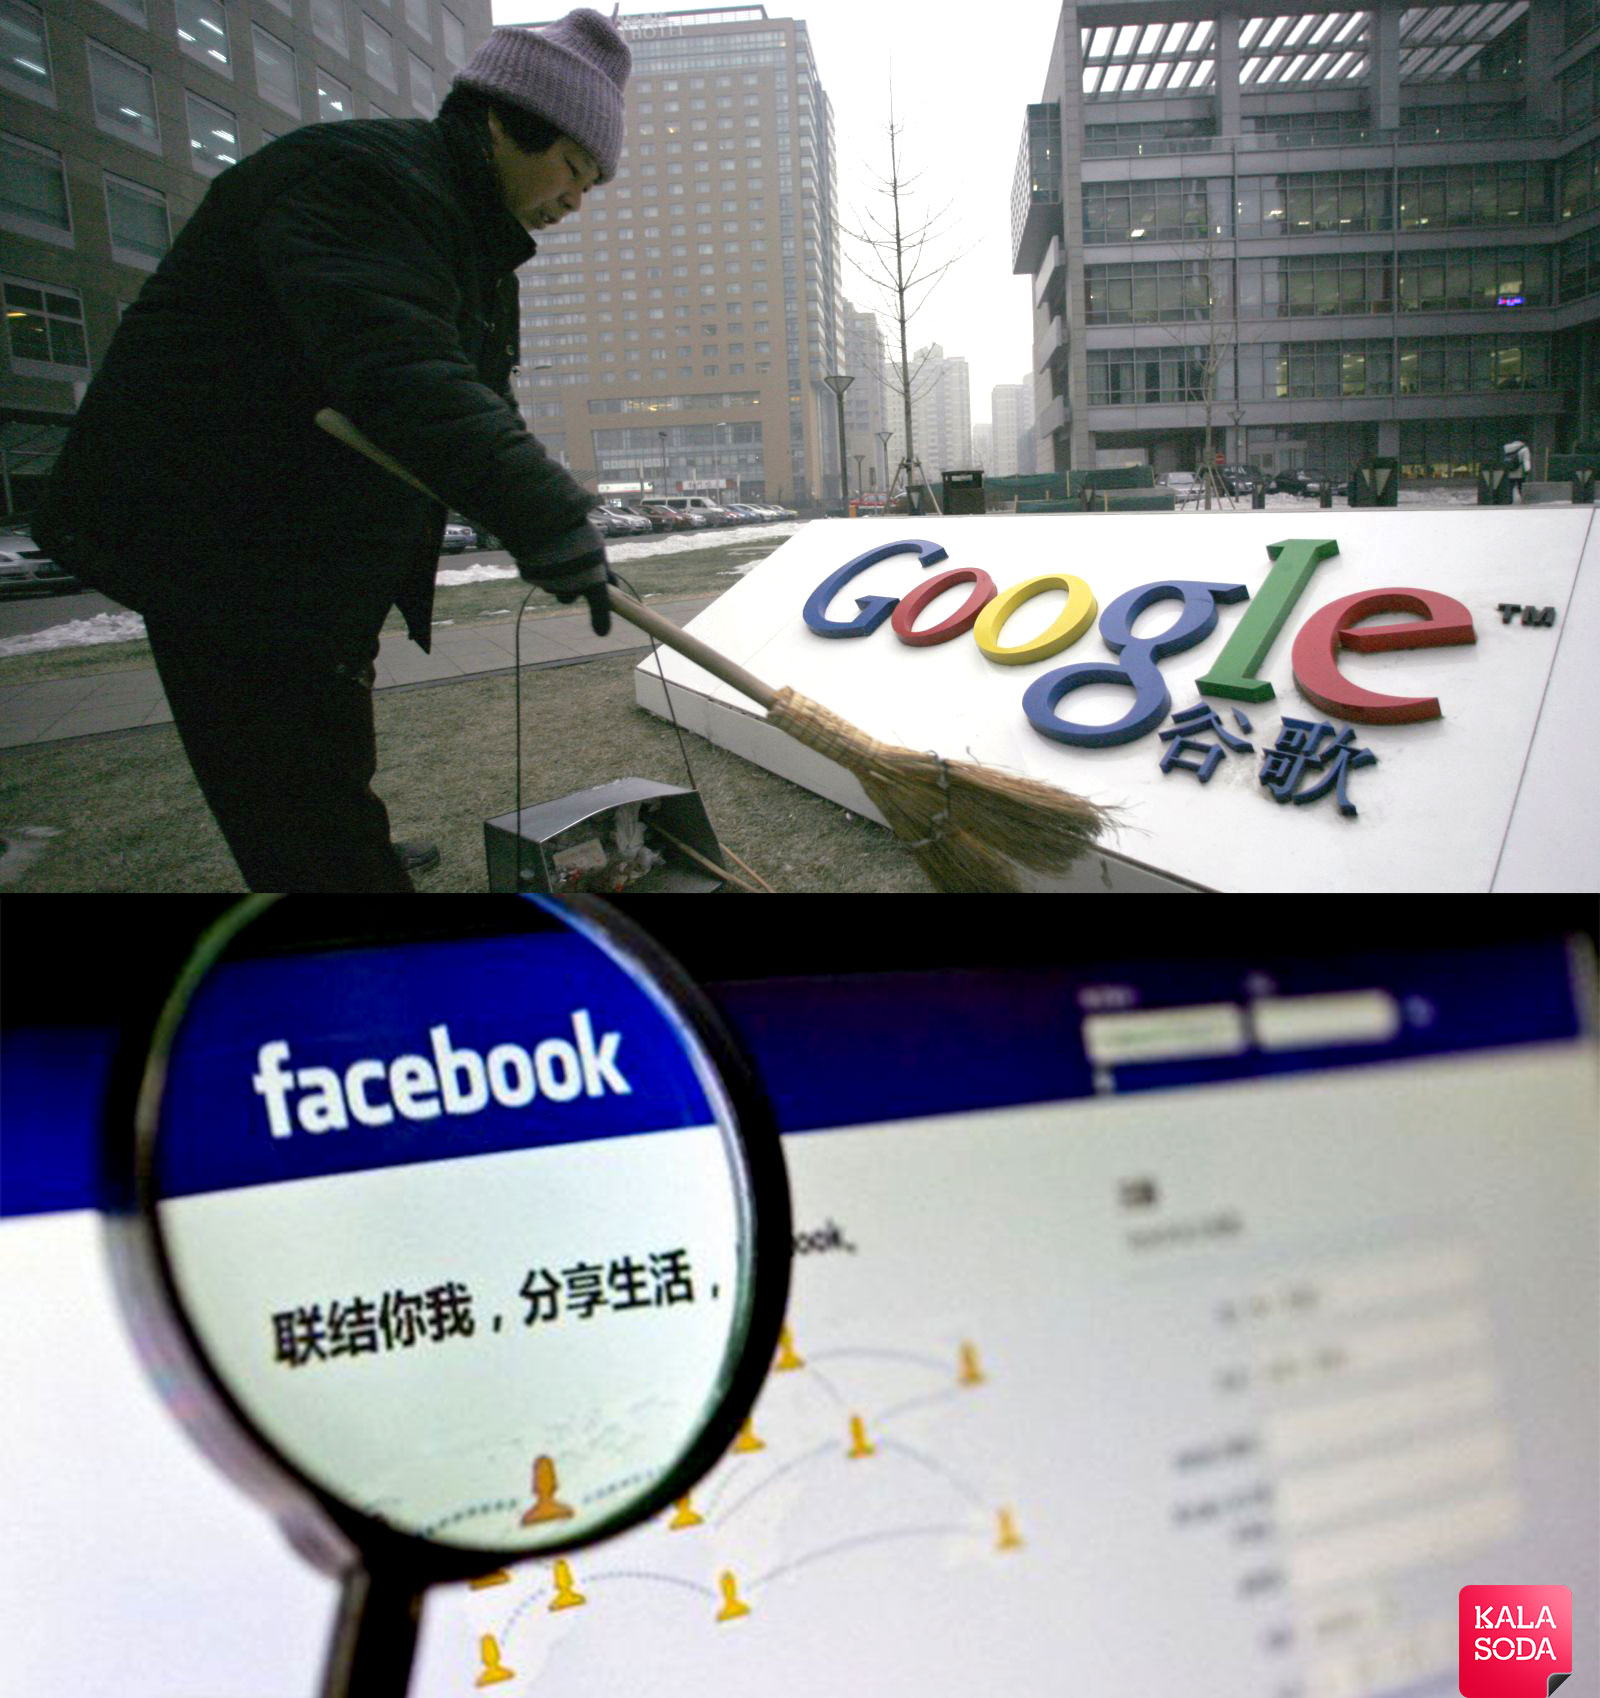 آیا گوگل و فیسبوک در چین رفع فیلتر میشوند؟|کالاسودا